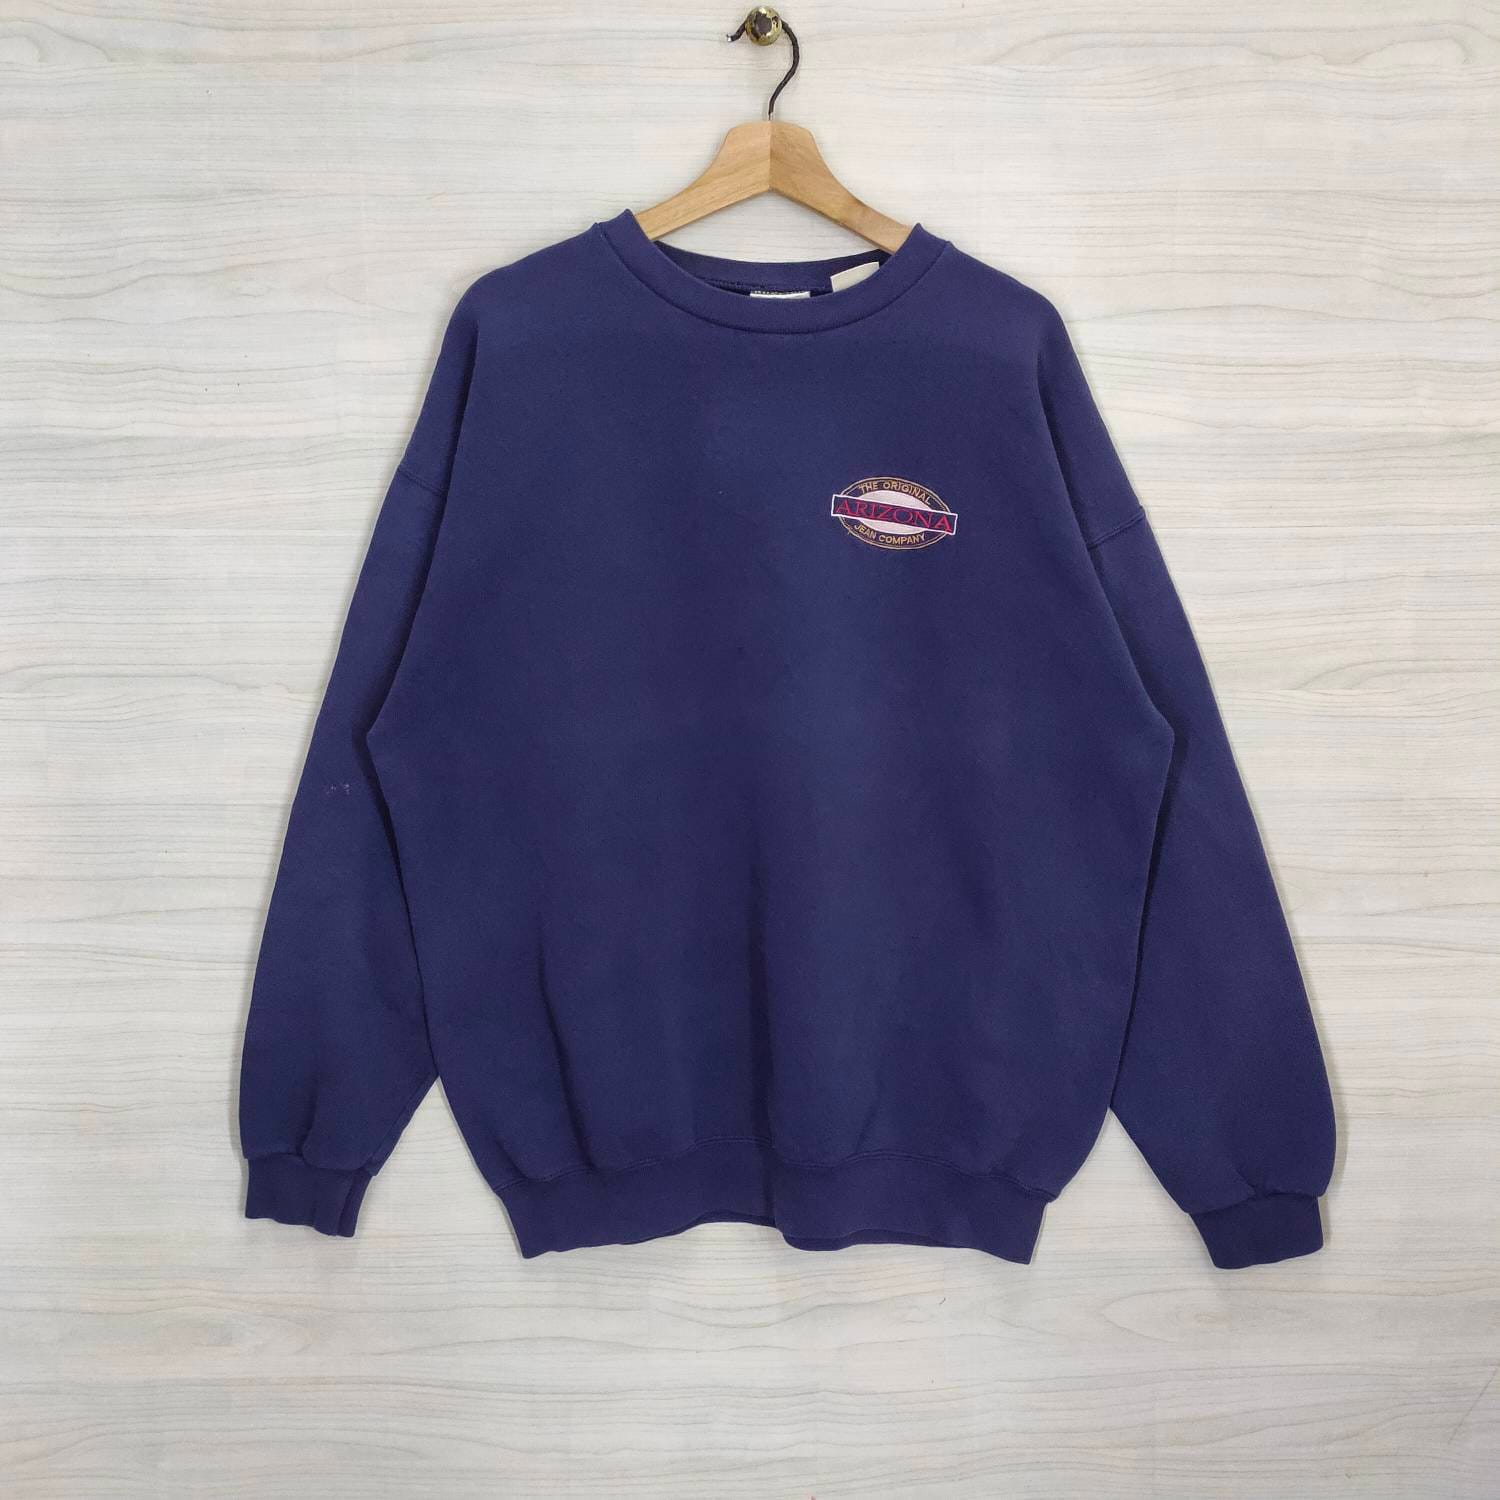 Arizona Jean Company Crewneck Sweatshirt Vintage Pullover Stickerei Baggy Made in Usa Navy Blau Damen Größe Xl von PsVintageStore